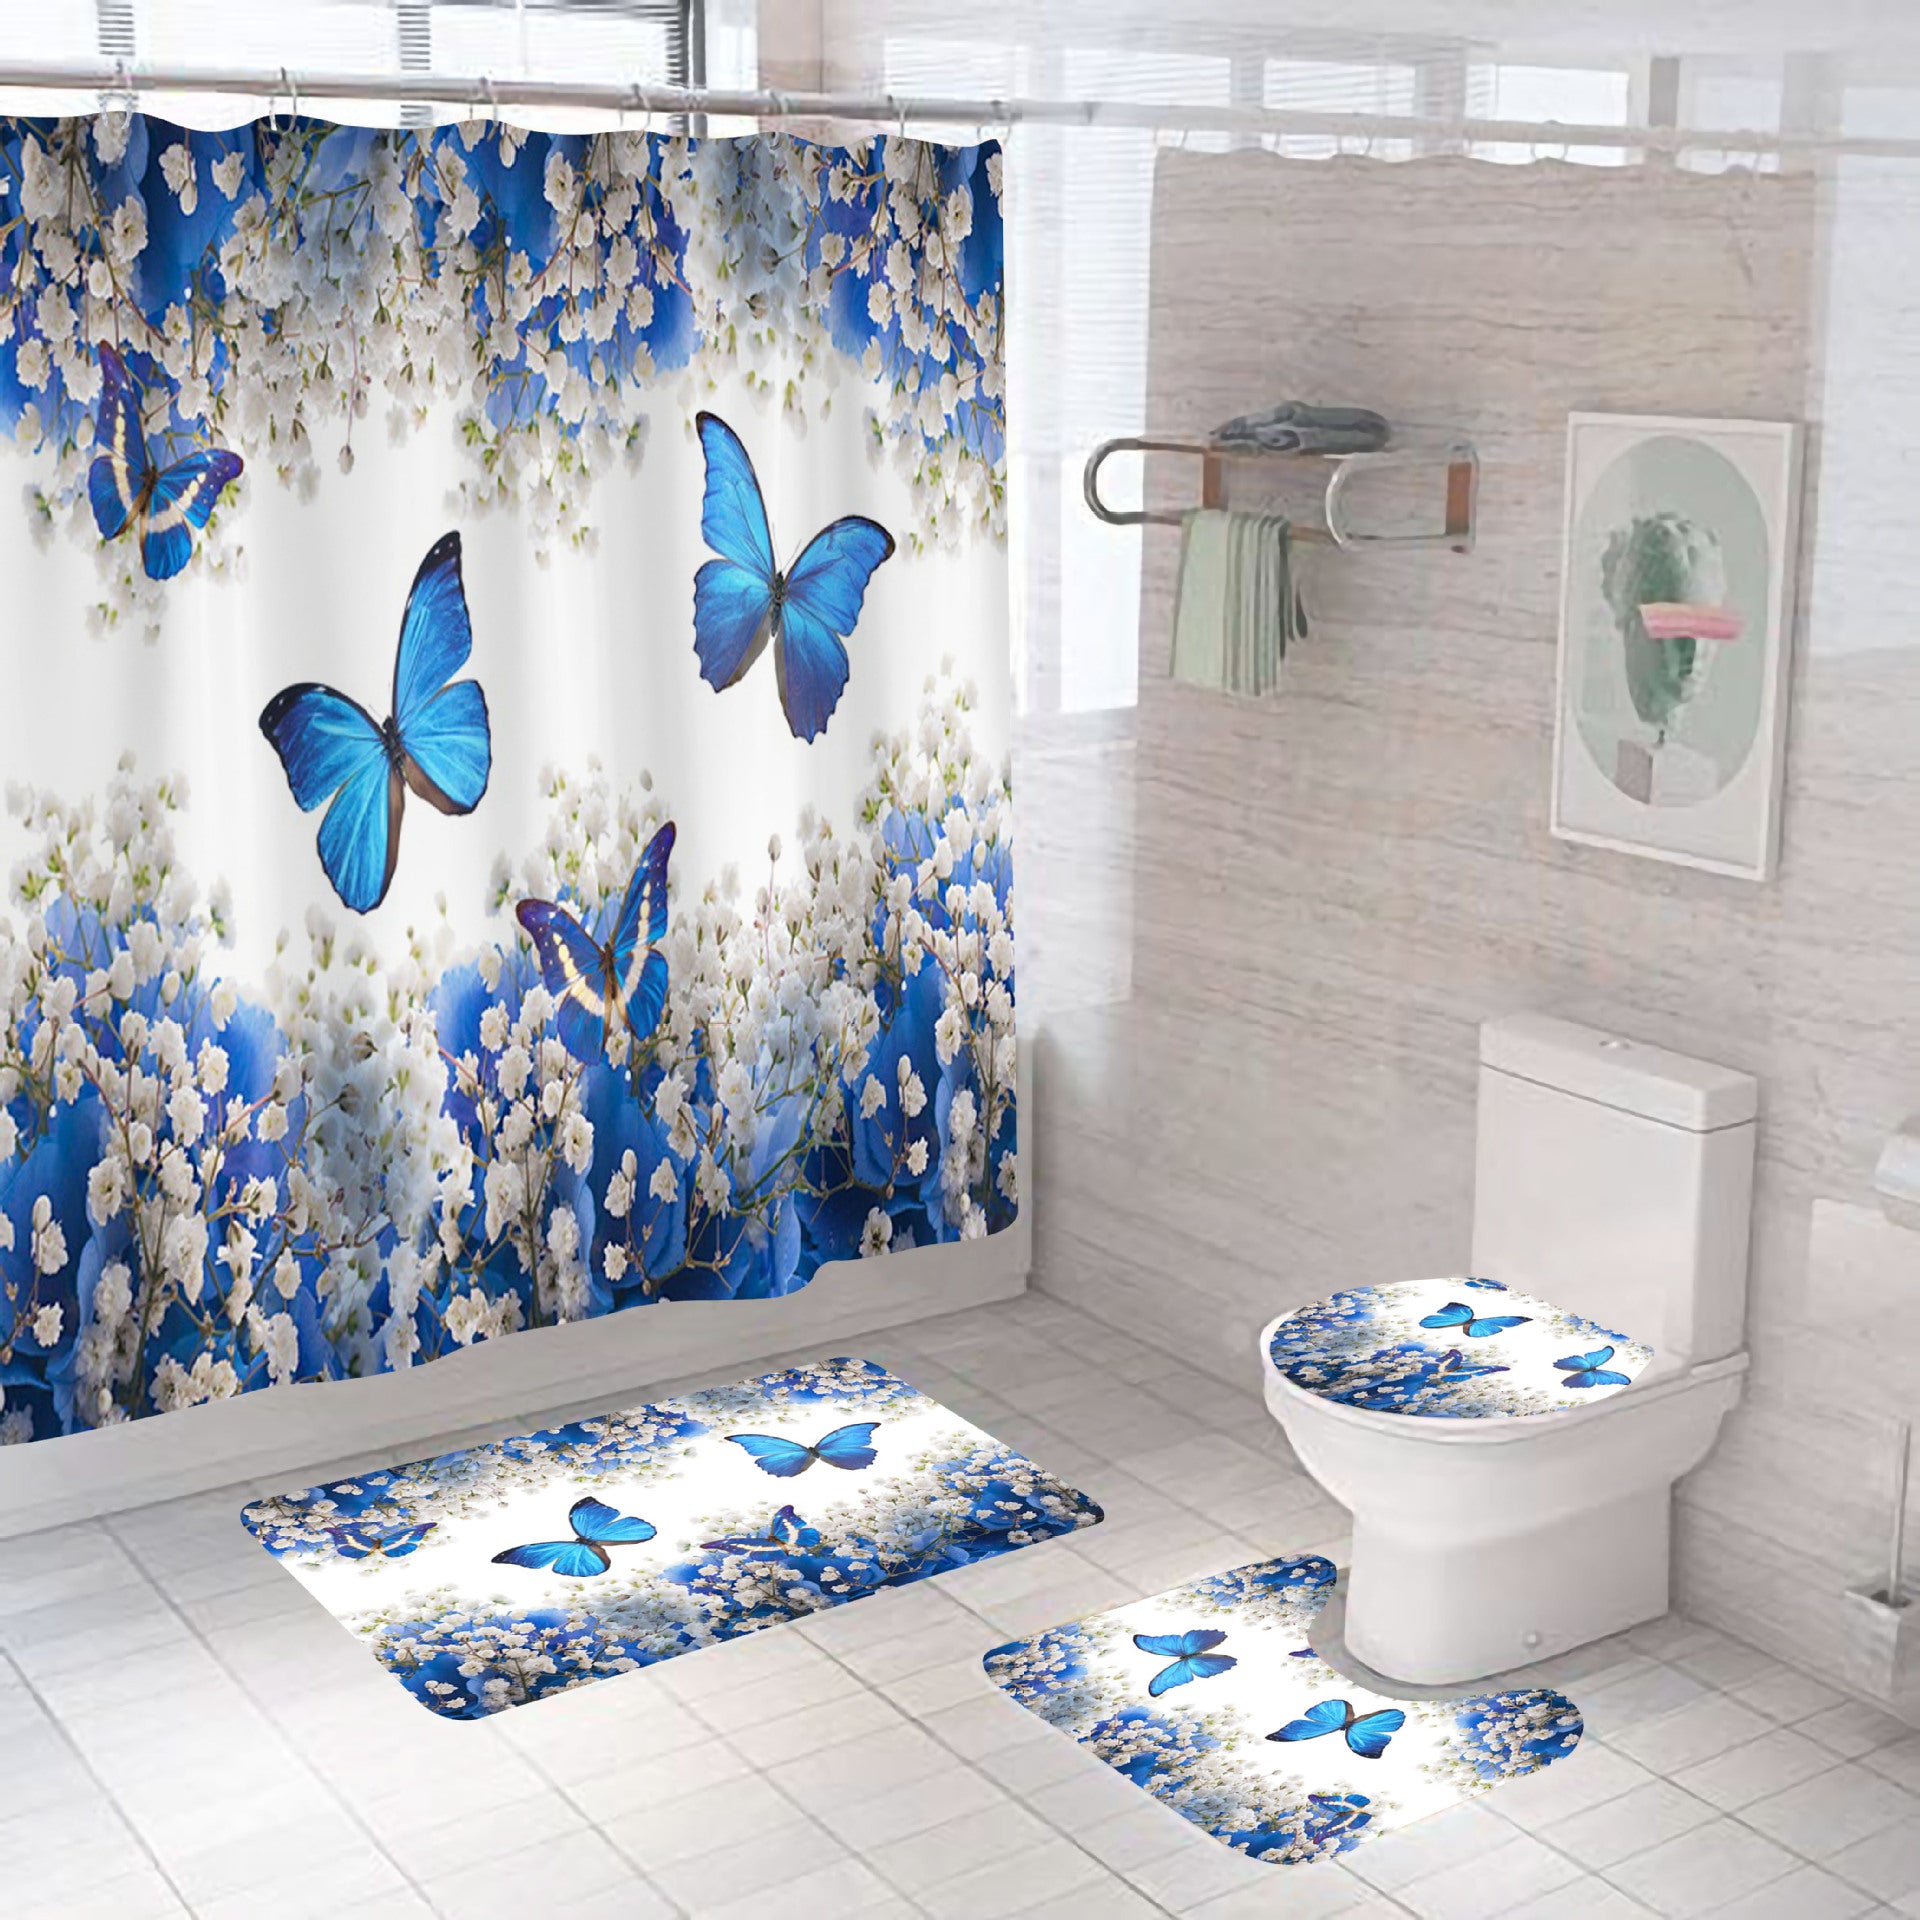 Conjunto de baño de poliéster impermeable con impresión digital-Digital Printing Waterproof Polyester Bathroom